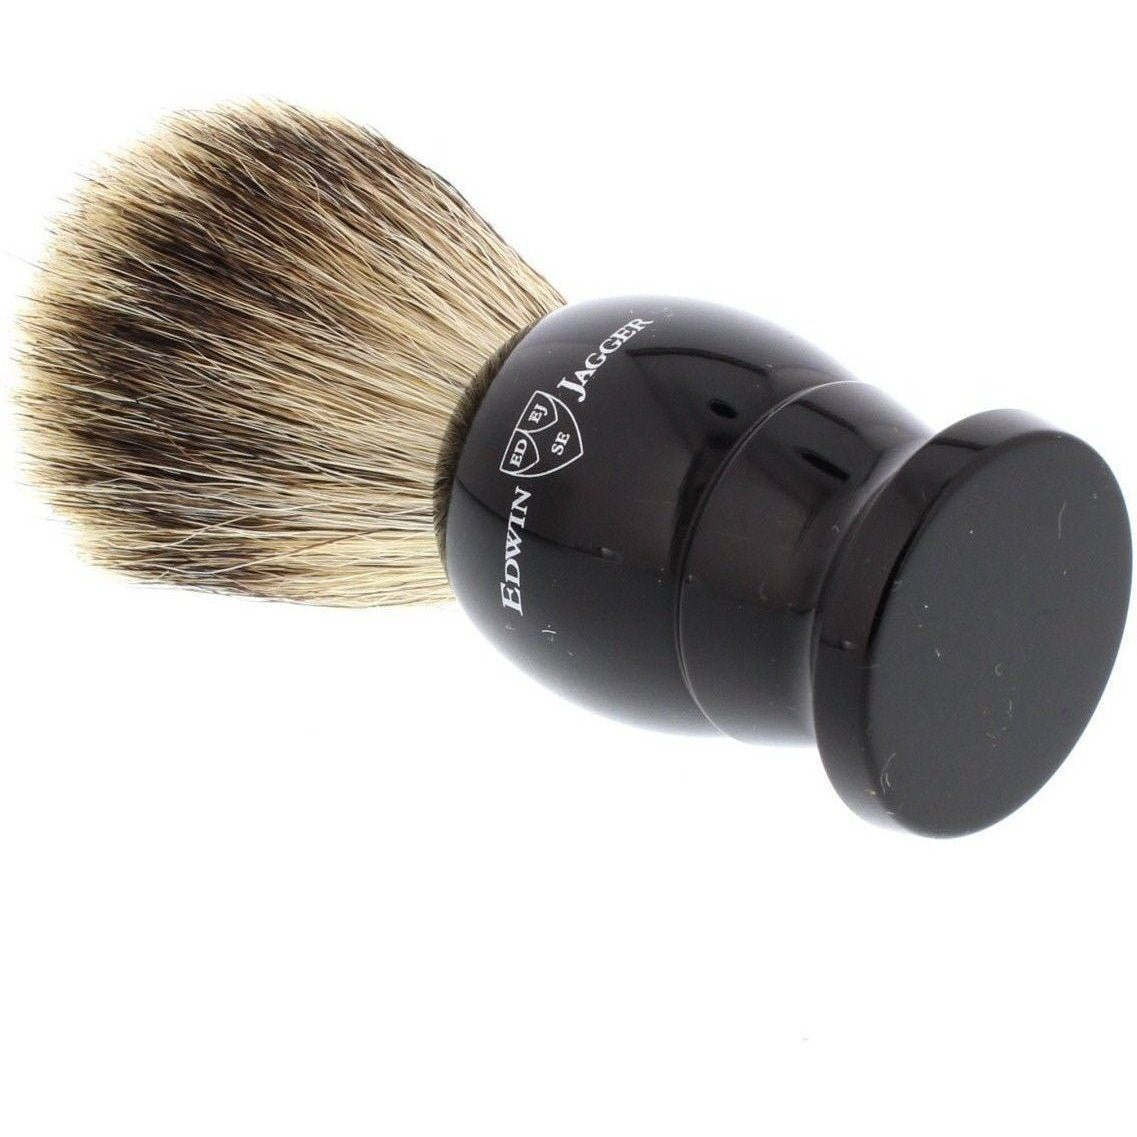 Product image 3 for Edwin Jagger Best Badger Shaving Brush, Medium, Black